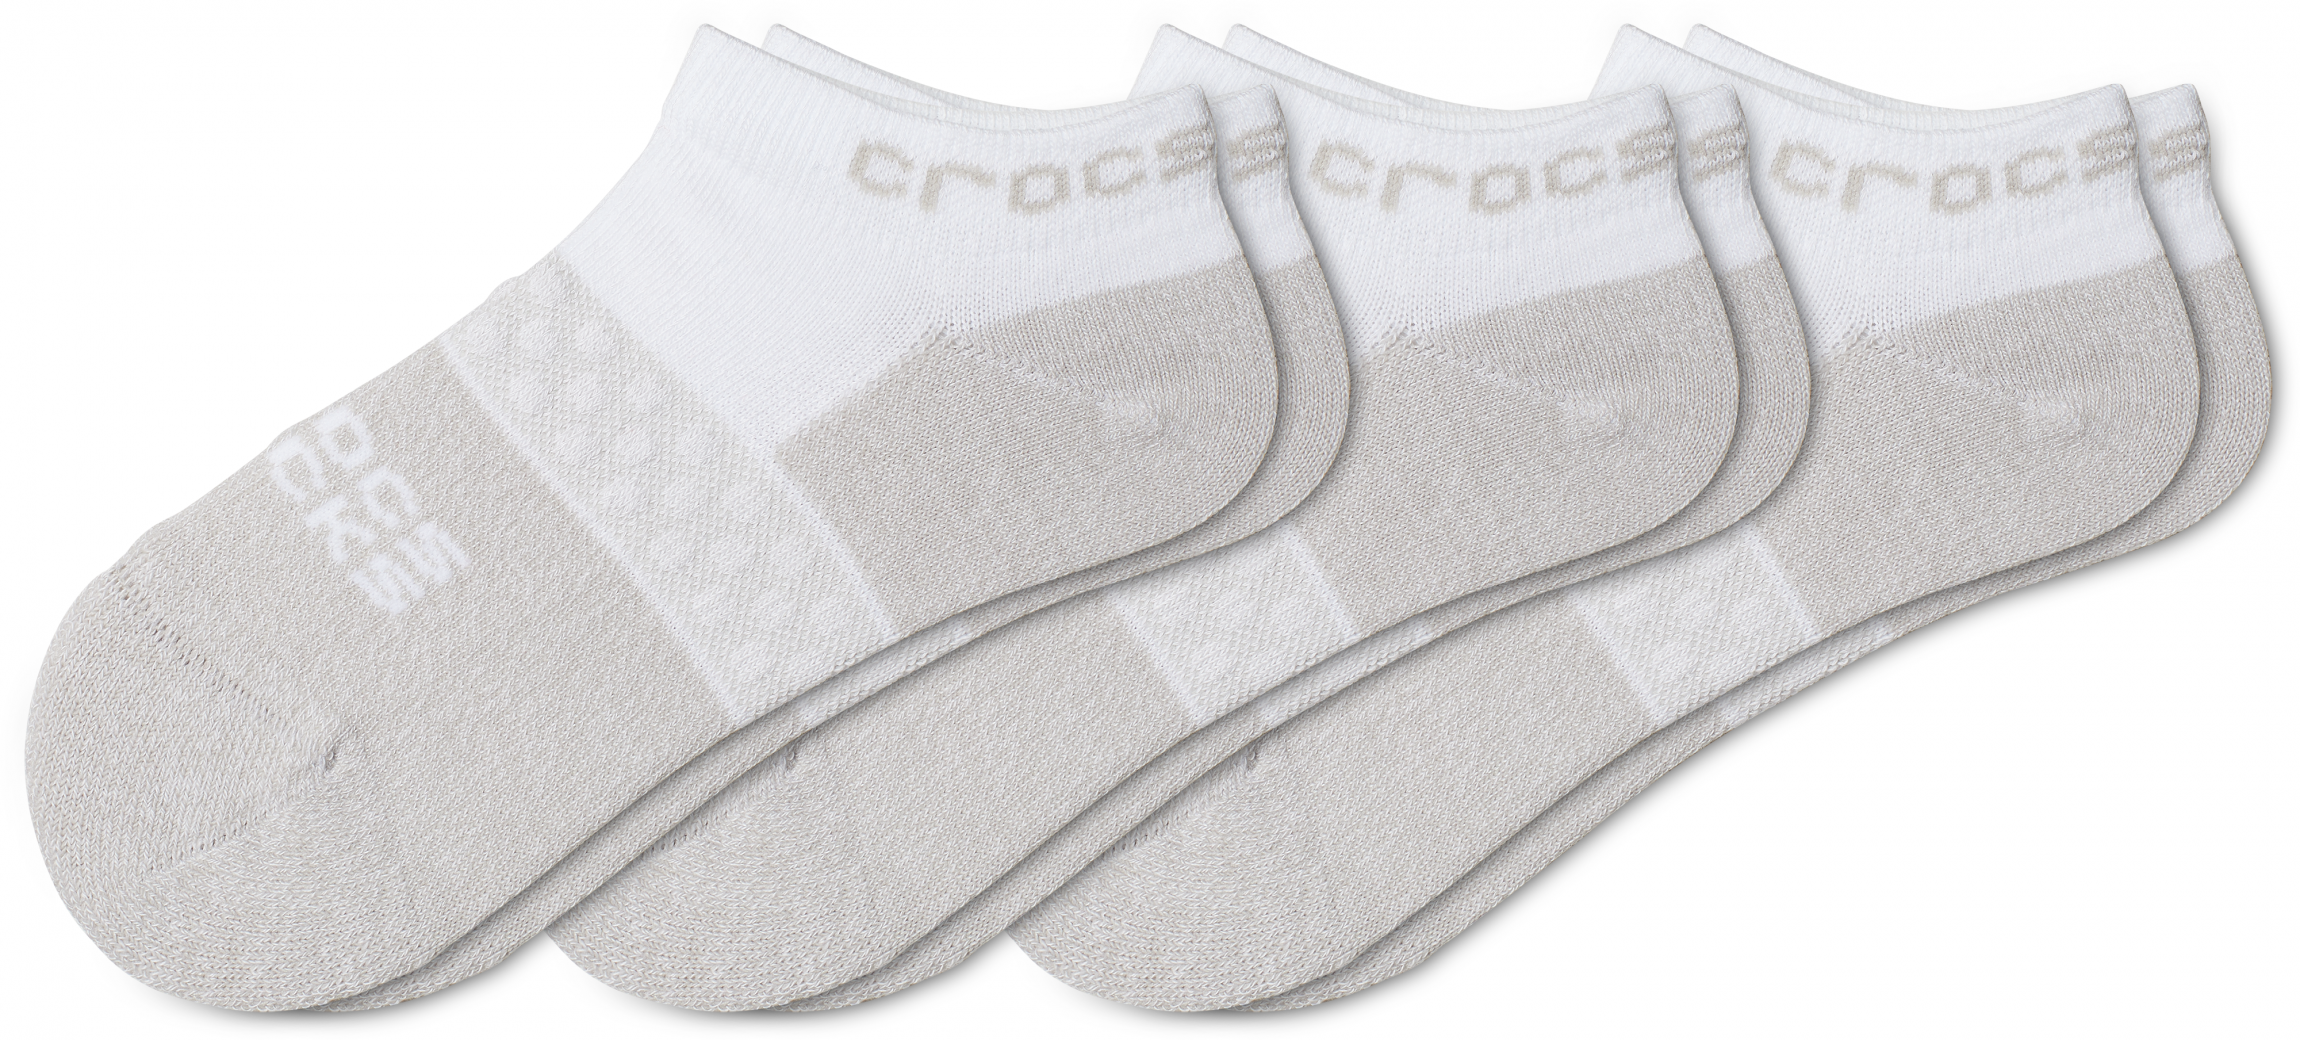 Crocs socks kid low evergreen 3 pack 3 pack